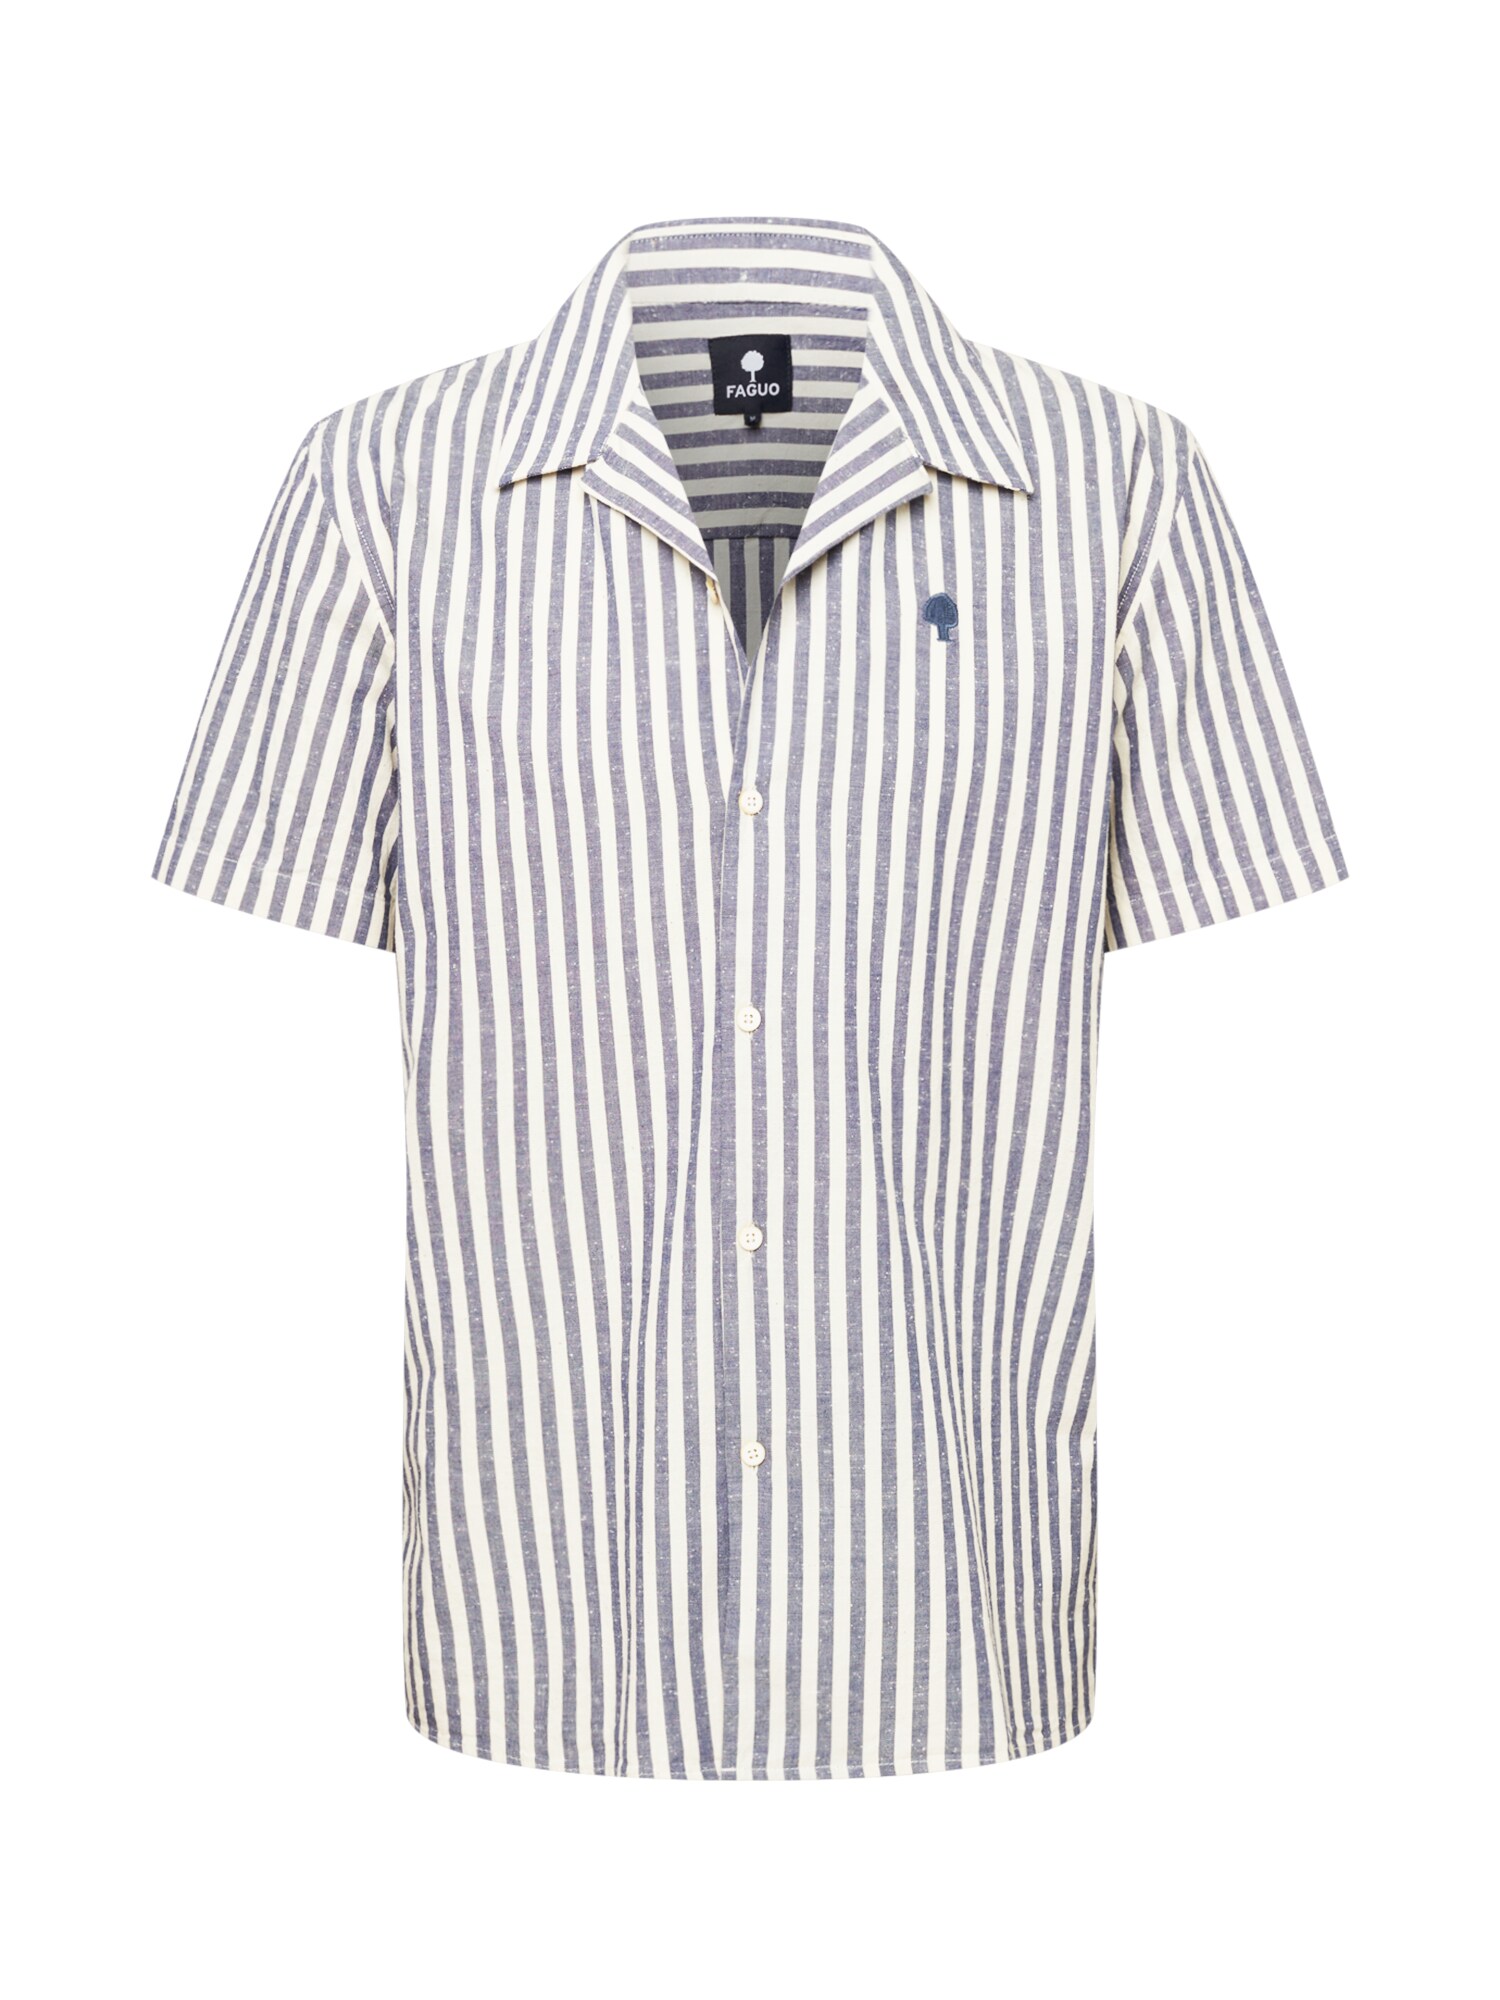 FAGUO Marškiniai 'VIMY' nebalintos drobės spalva / tamsiai mėlyna jūros spalva